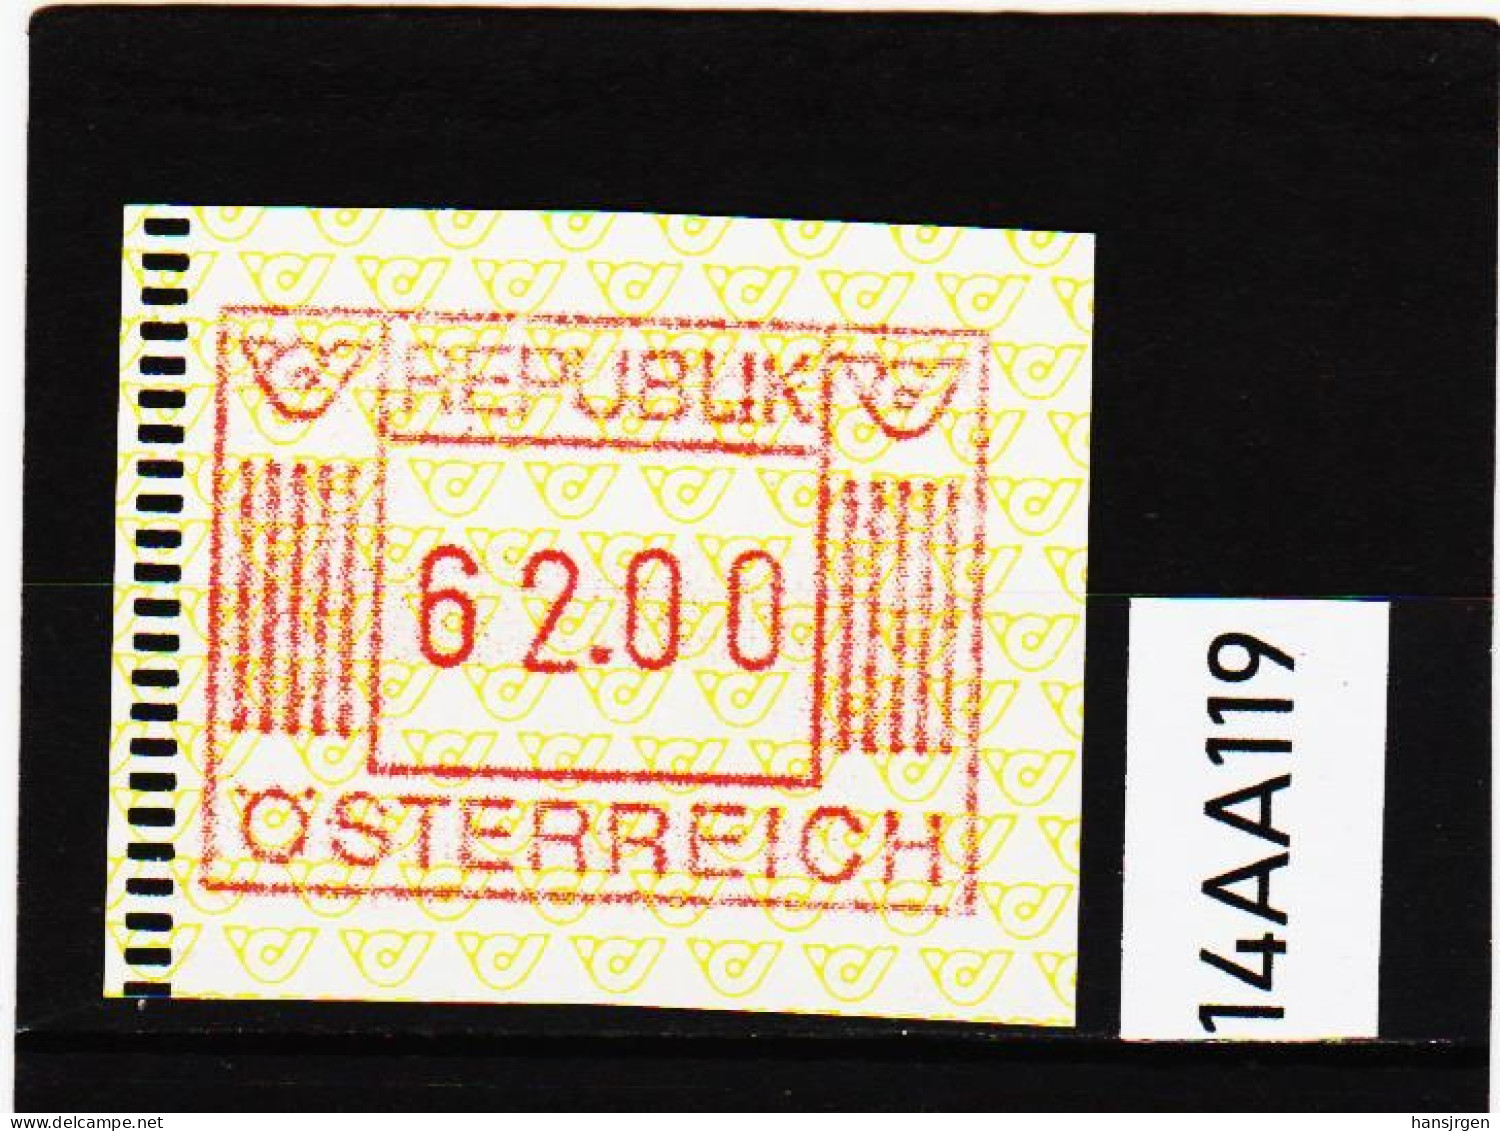 14AA/119  ÖSTERREICH 1983 AUTOMATENMARKEN  A N K  1. AUSGABE  62,00 SCHILLING   ** Postfrisch - Automatenmarken [ATM]